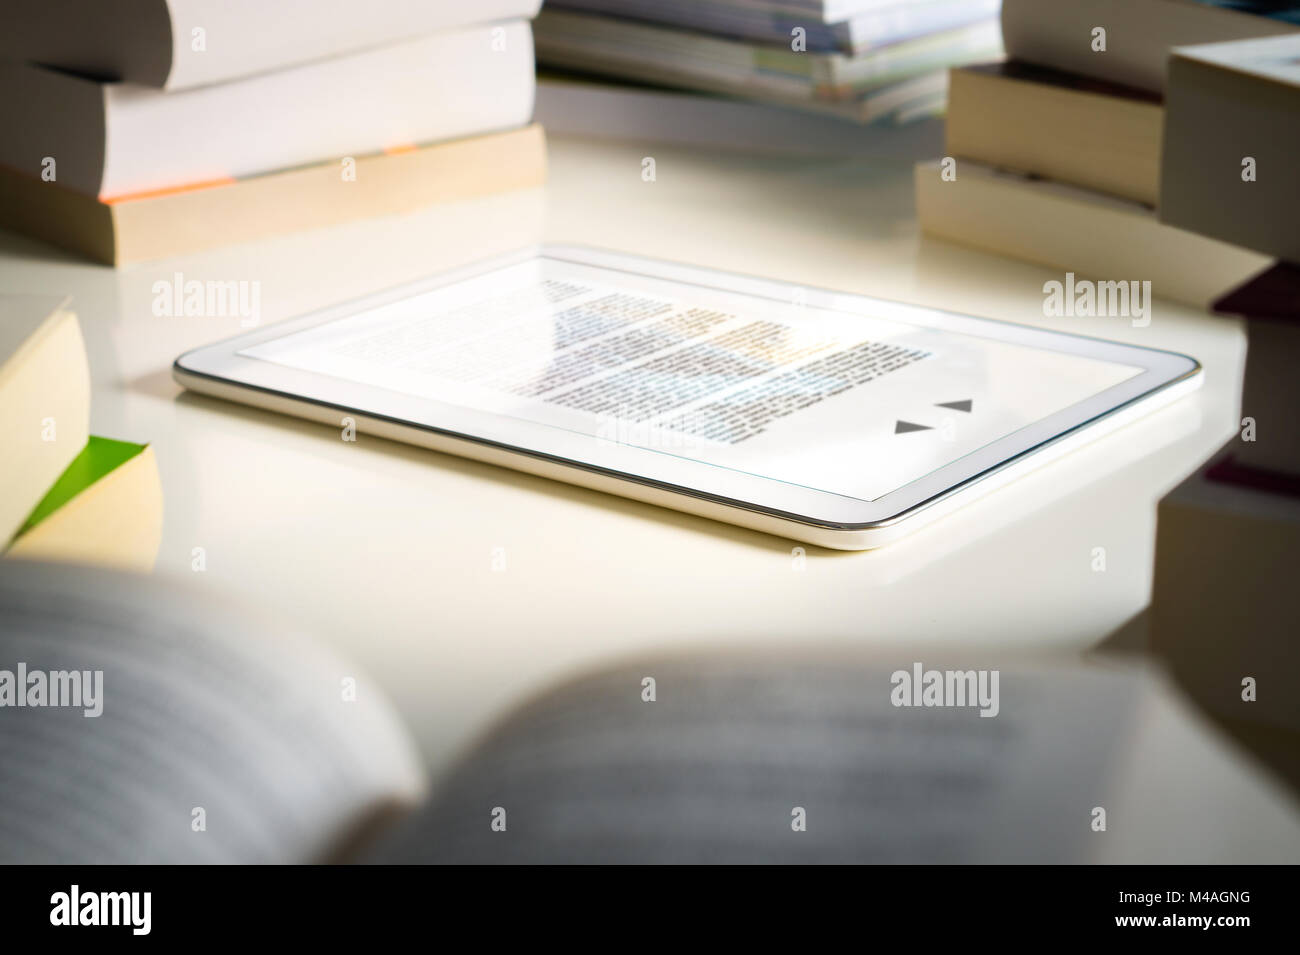 Lettore del libro elettronico. Moderne smart device per la lettura circondati da pile di libri tradizionali. Libreria o a casa. Foto Stock